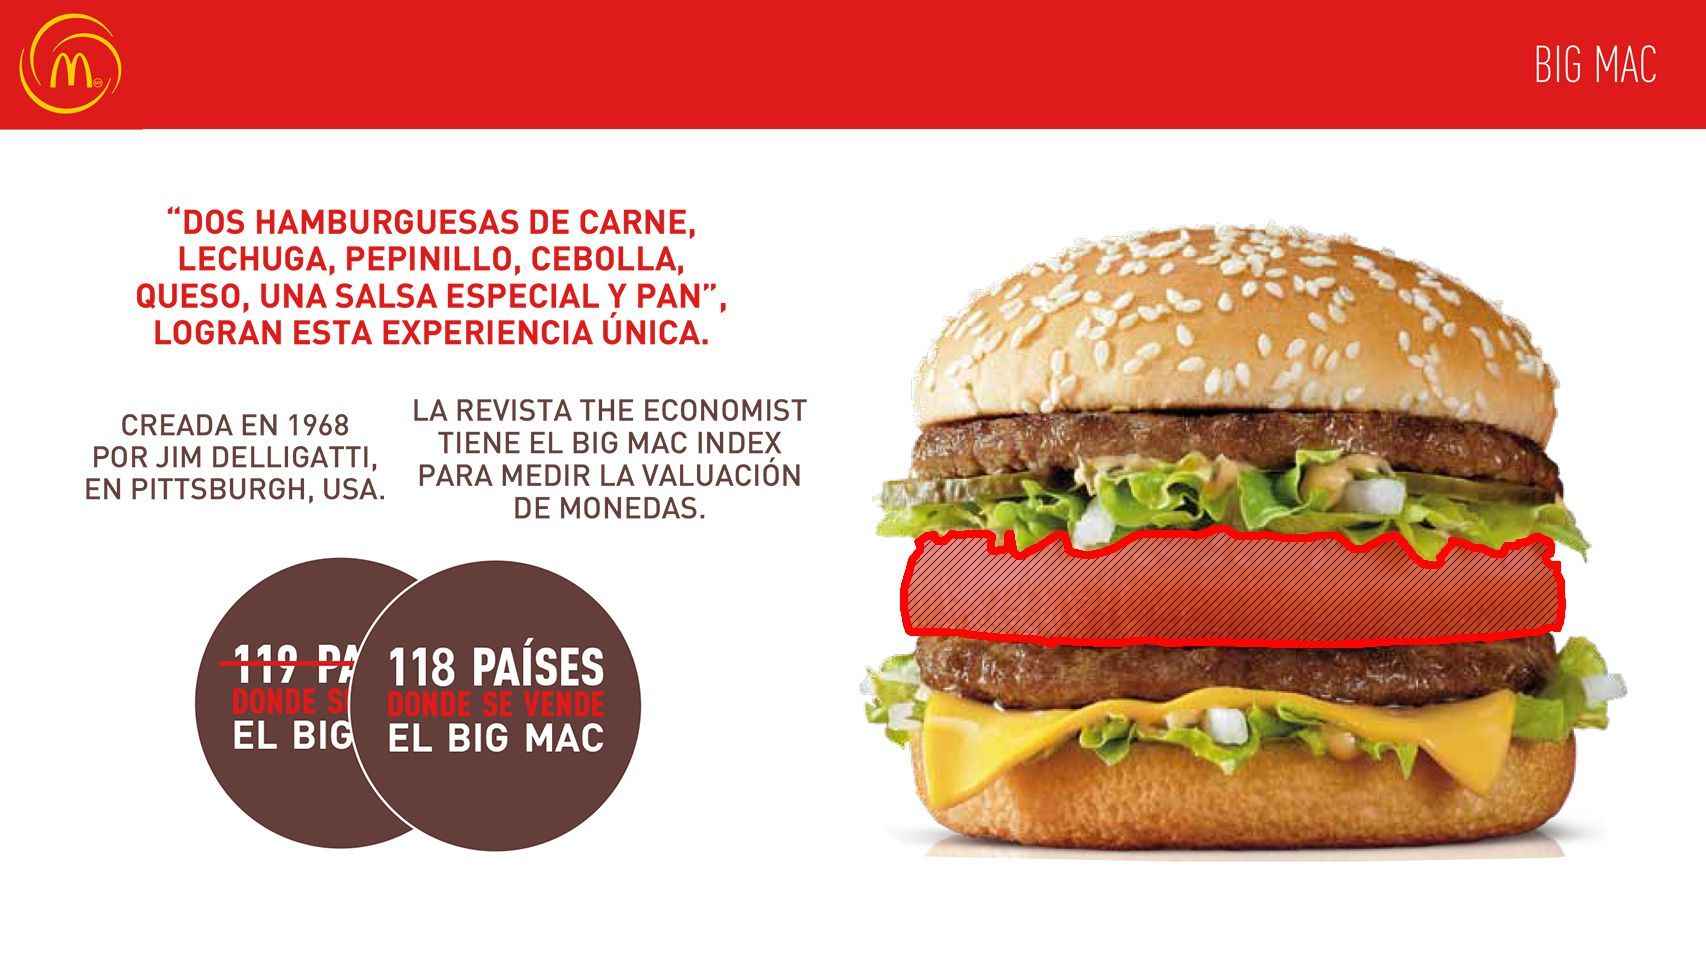 Descubre Cual Es el Nombre del Pan Usado en la Big Mac - Una Guía Paso a Paso